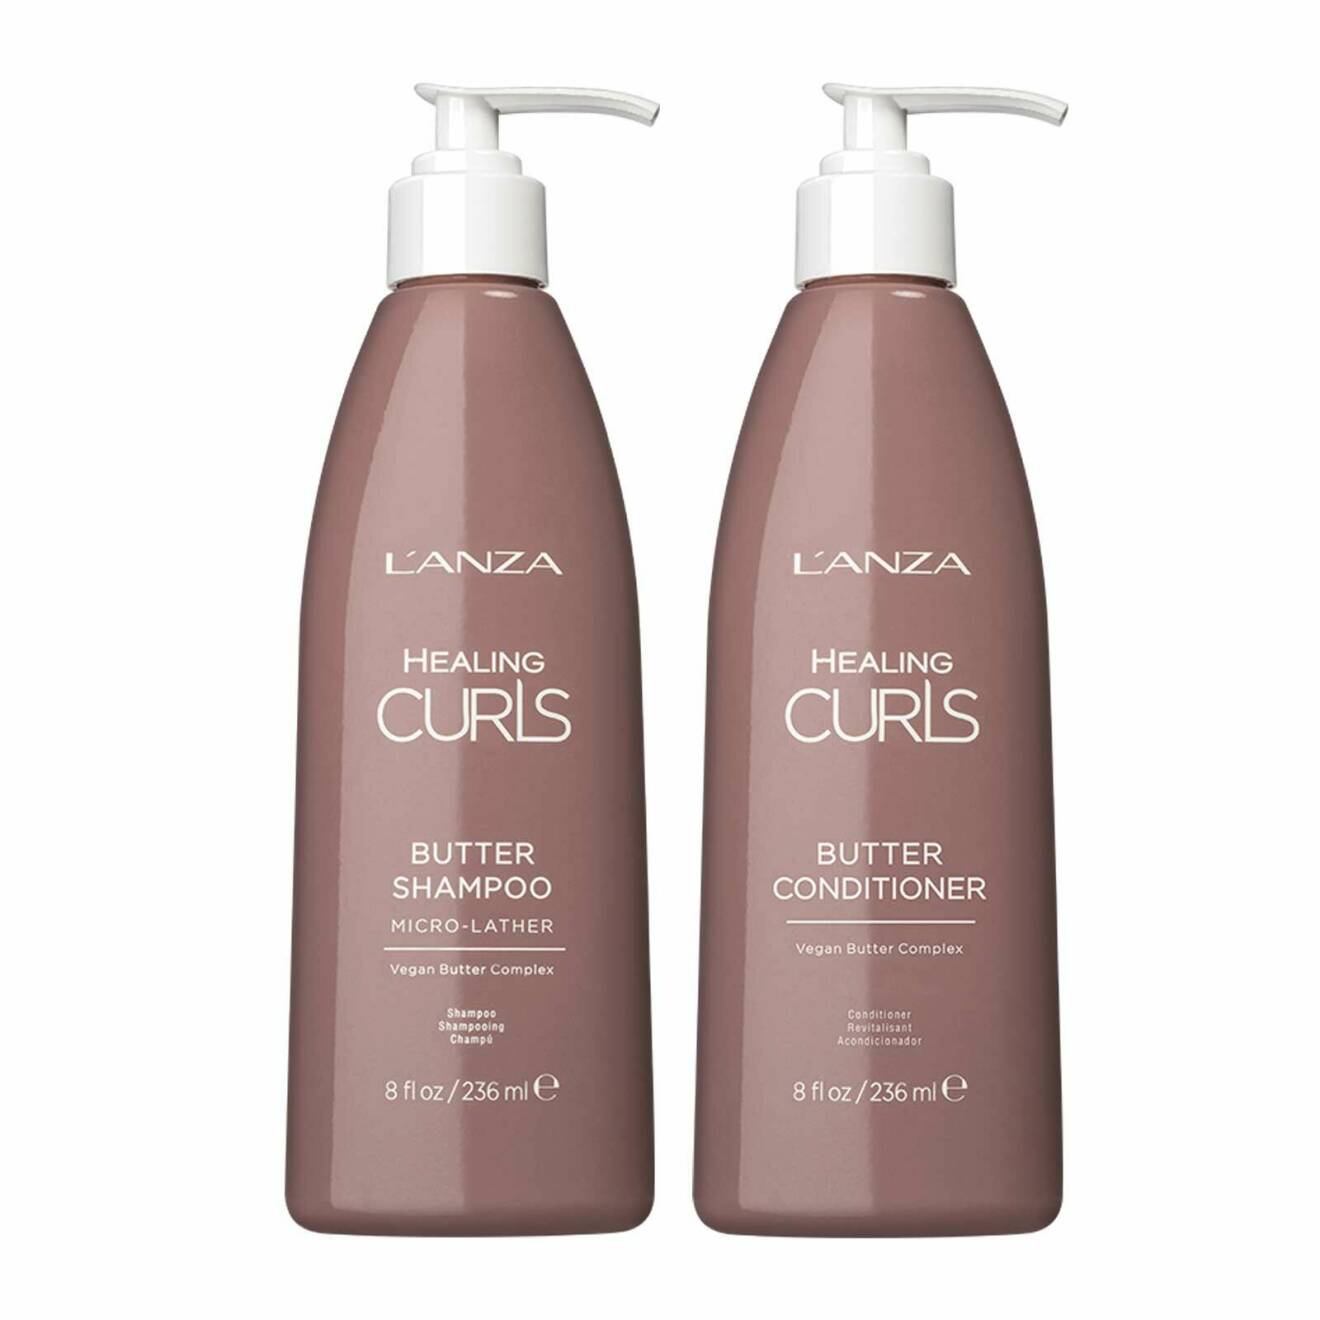 Healing Curls Butter shampo och balsam från L’Anza.